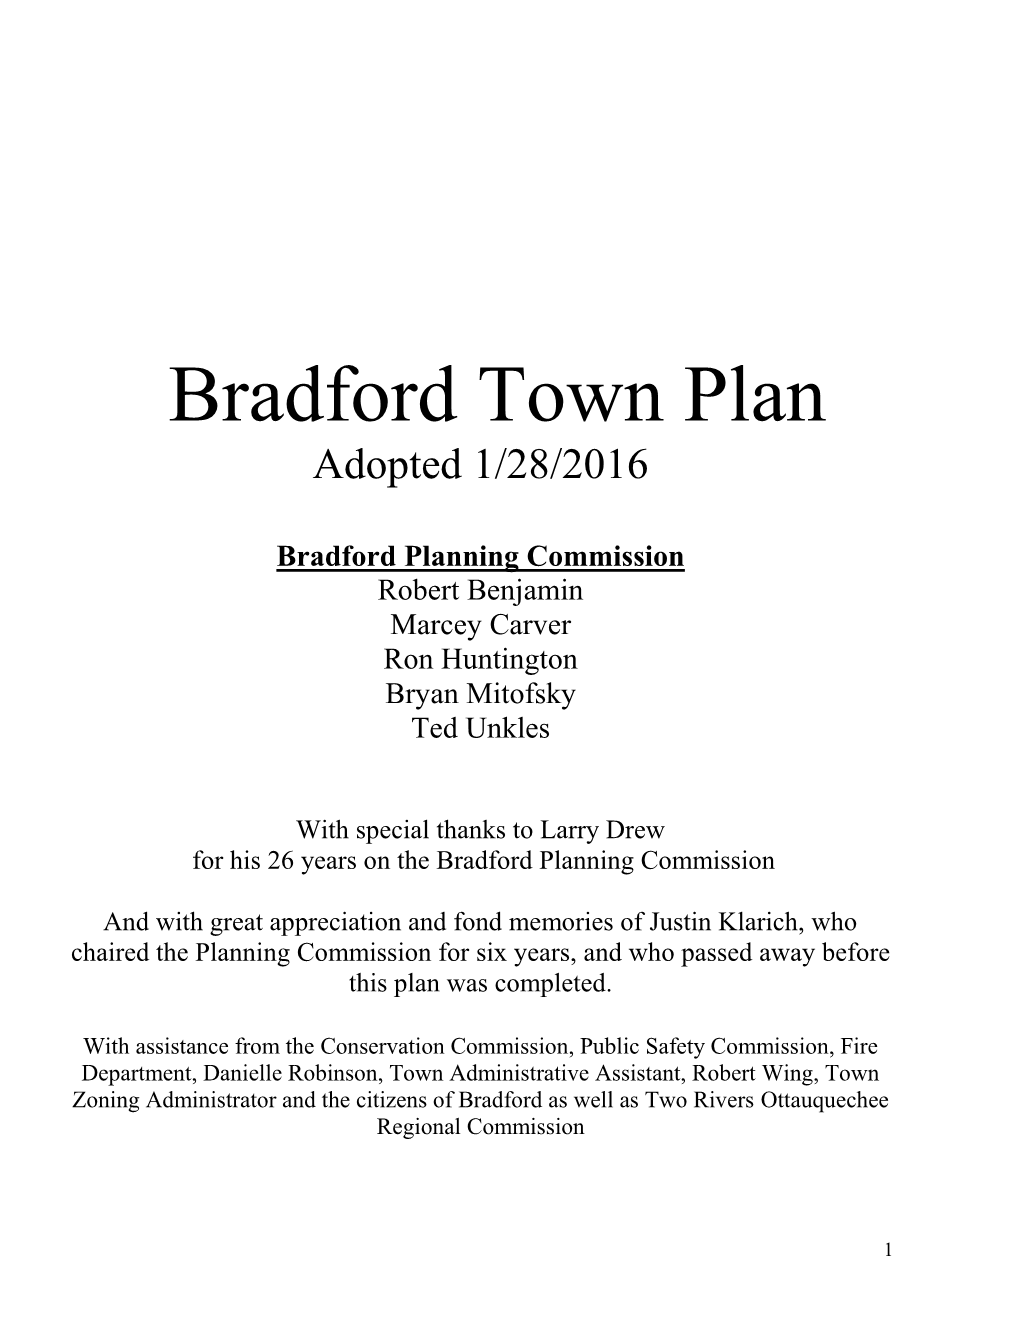 Bradford Town Plan Adopted 1/28/2016